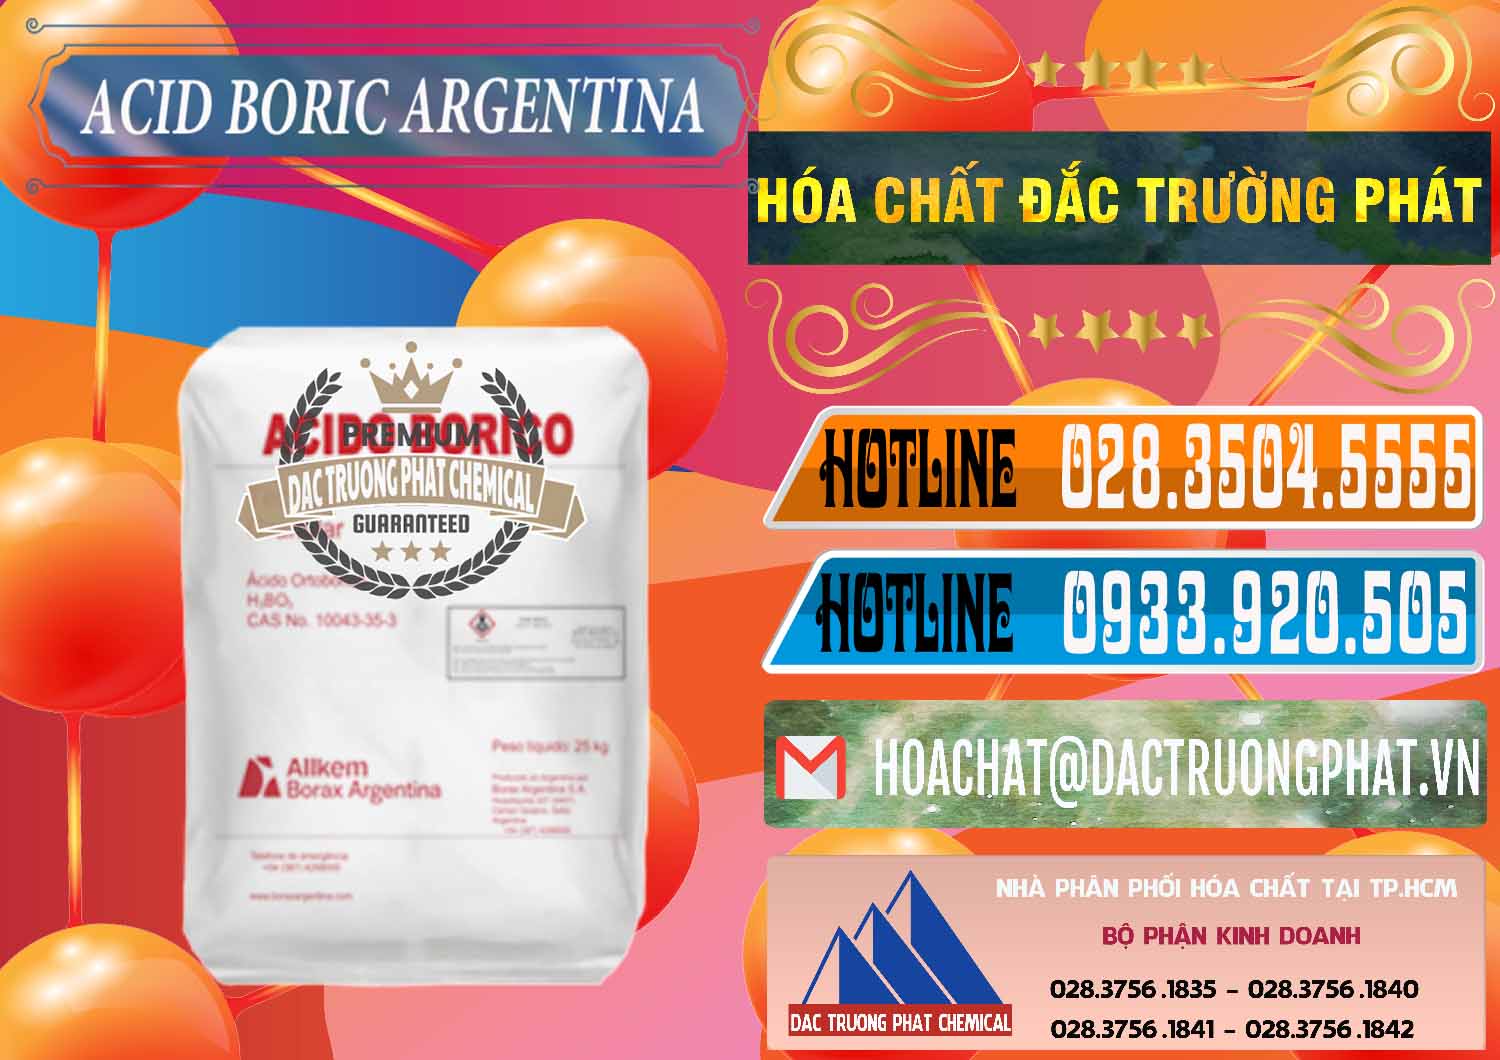 Cty chuyên bán - cung cấp Acid Boric – Axit Boric H3BO3 99% Allkem Argentina - 0448 - Cty chuyên nhập khẩu - phân phối hóa chất tại TP.HCM - stmp.net